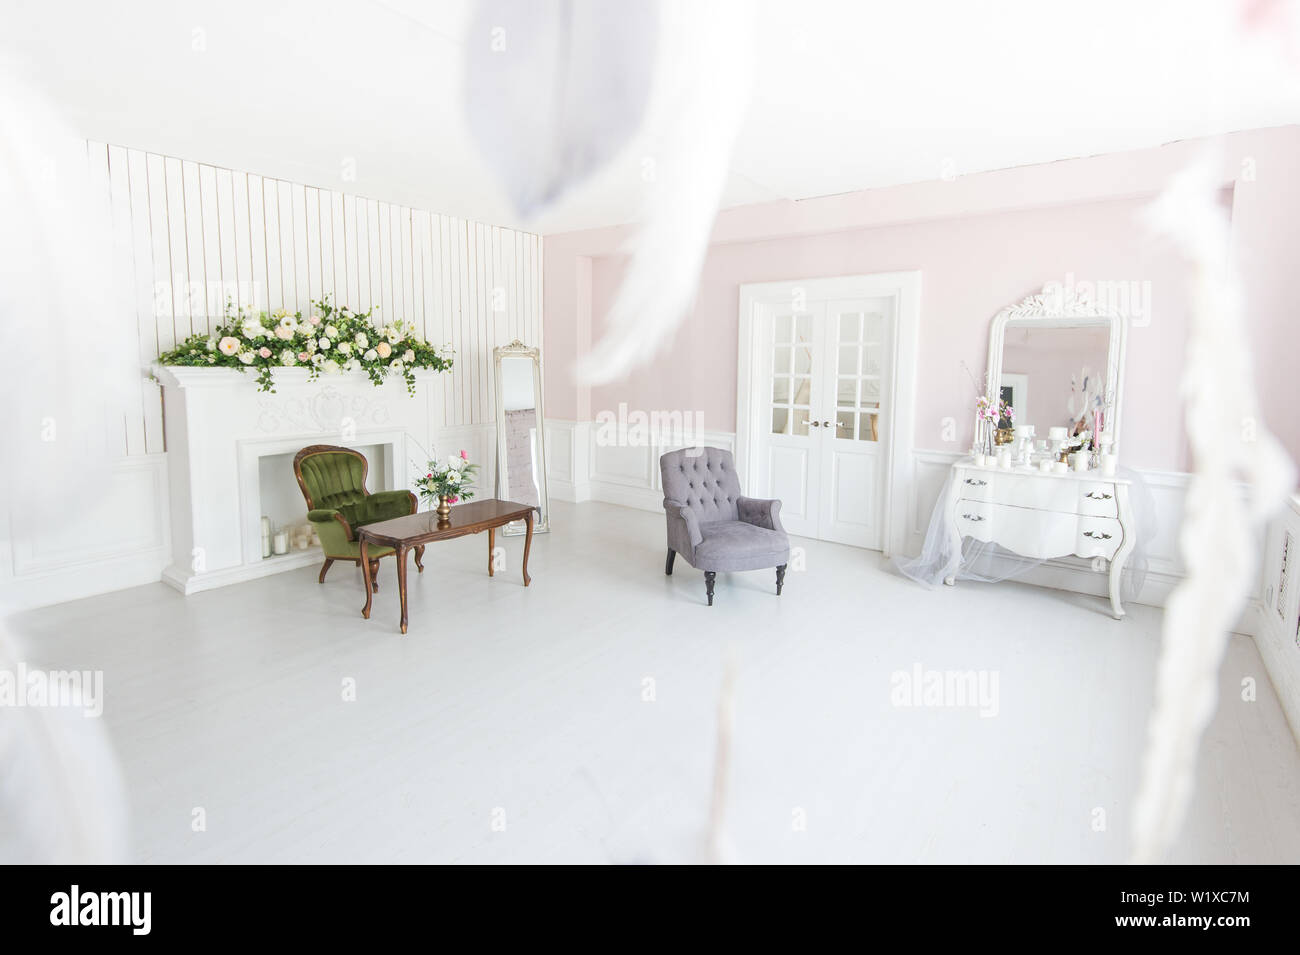 Helle luxuriöse Interieur der Wohnzimmer mit Kamin und Sesseln mit Blumen geschmückt. Stockfoto